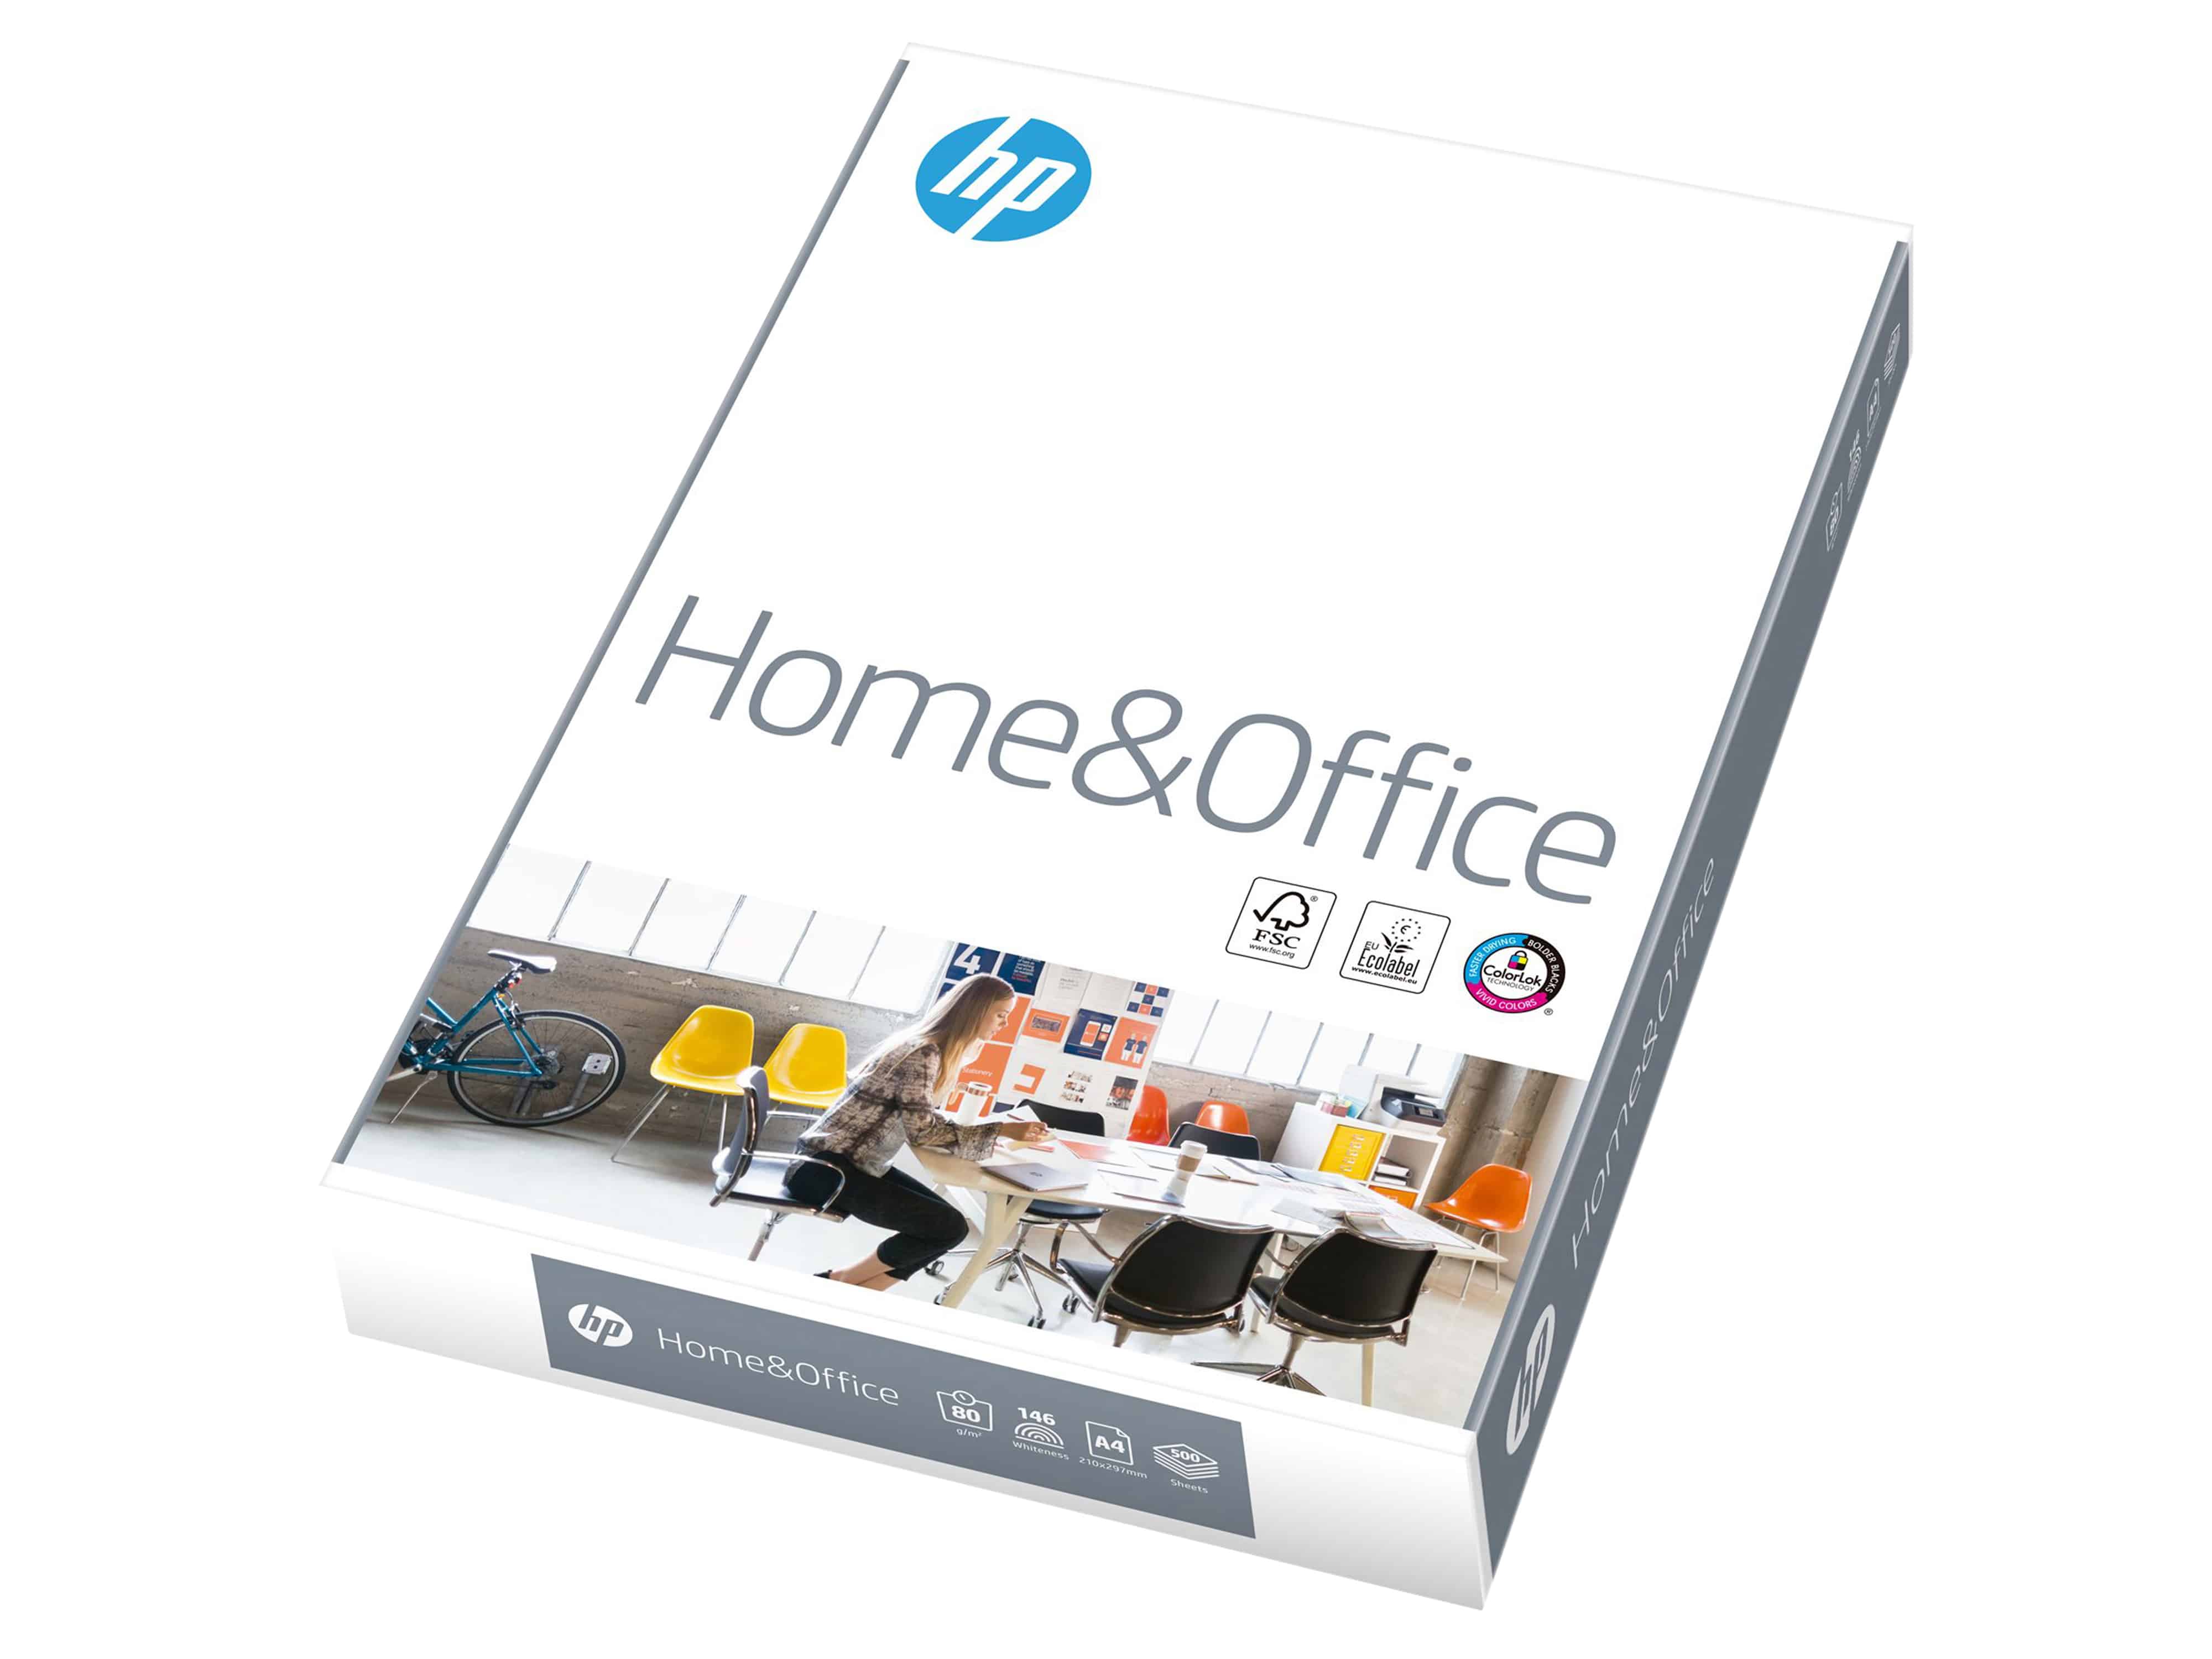 HP Kopierpapier Home & Office 80g 500 Blatt           